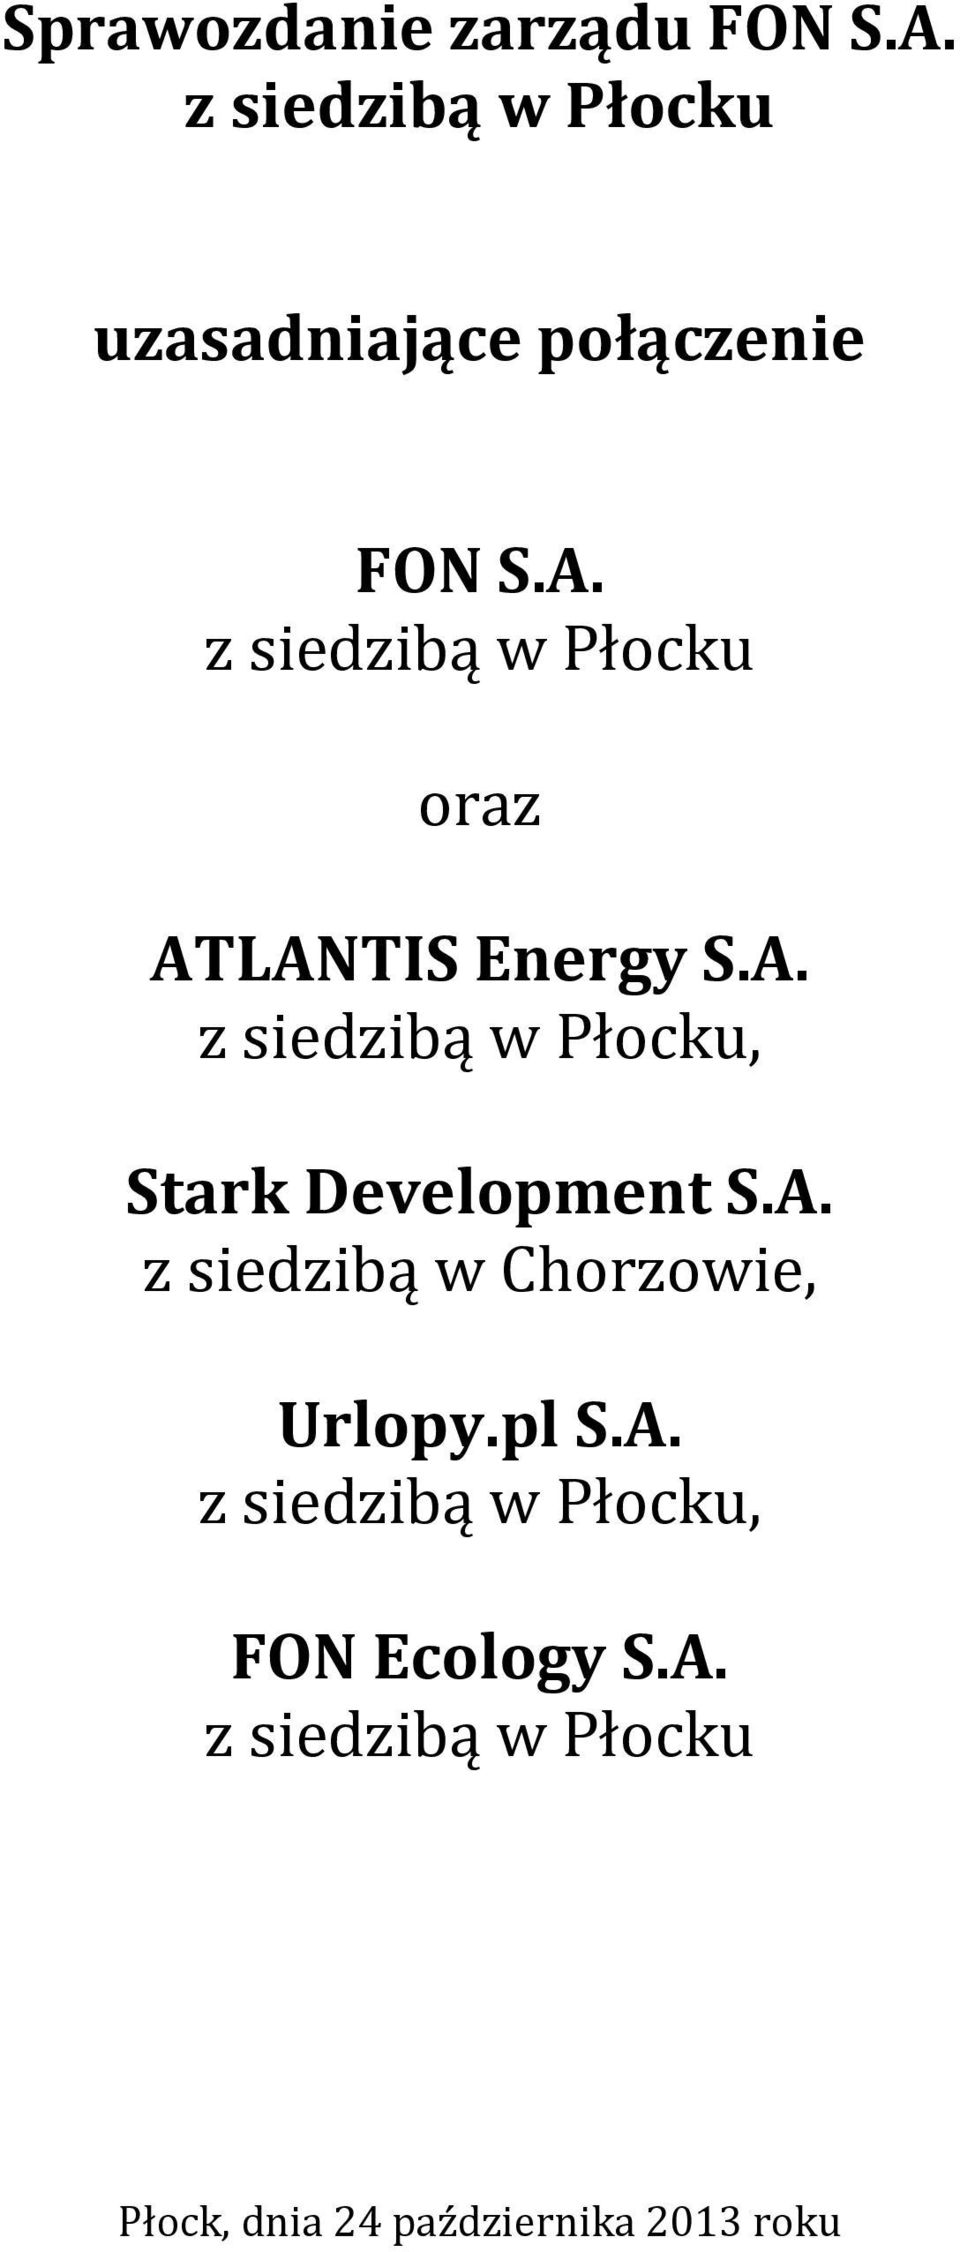 oraz ATLANTIS Energy S.A., Stark Development S.A. z siedzibą w Chorzowie, Urlopy.